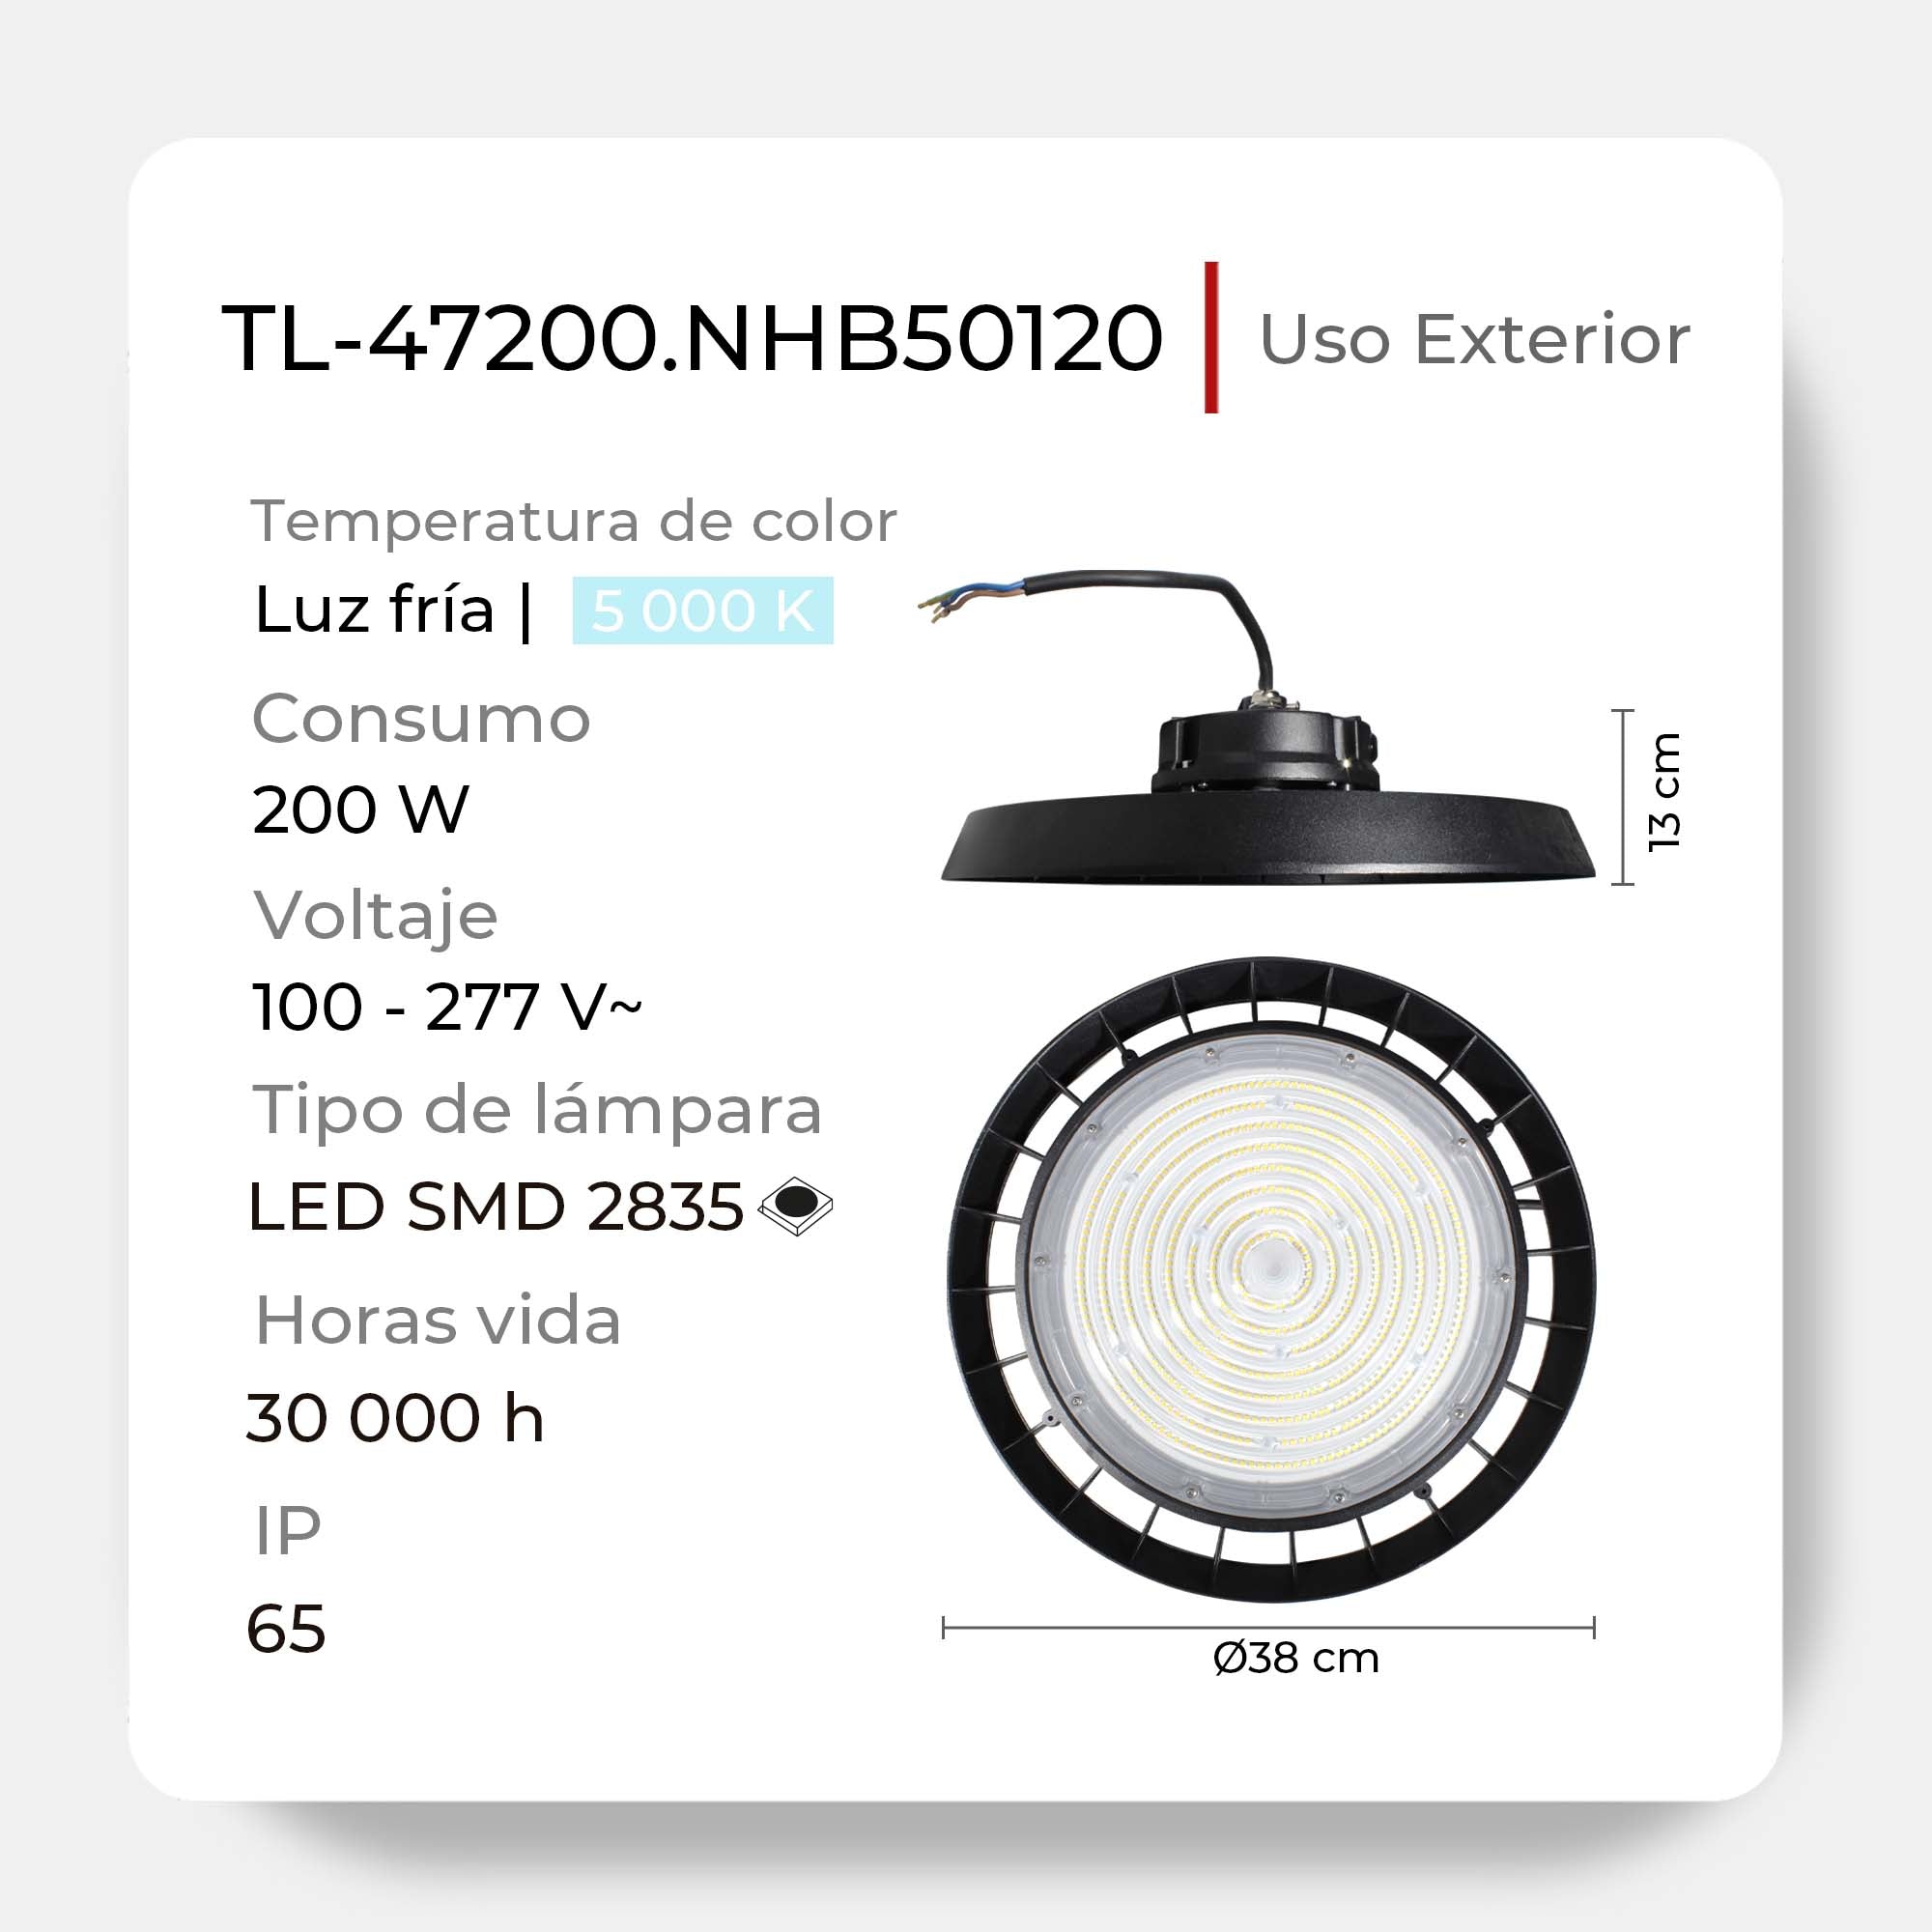 Luminaria LED HIGH BAY Industrial de Suspensión en Techo, Modelo TL-47200.NHB50120 Illux